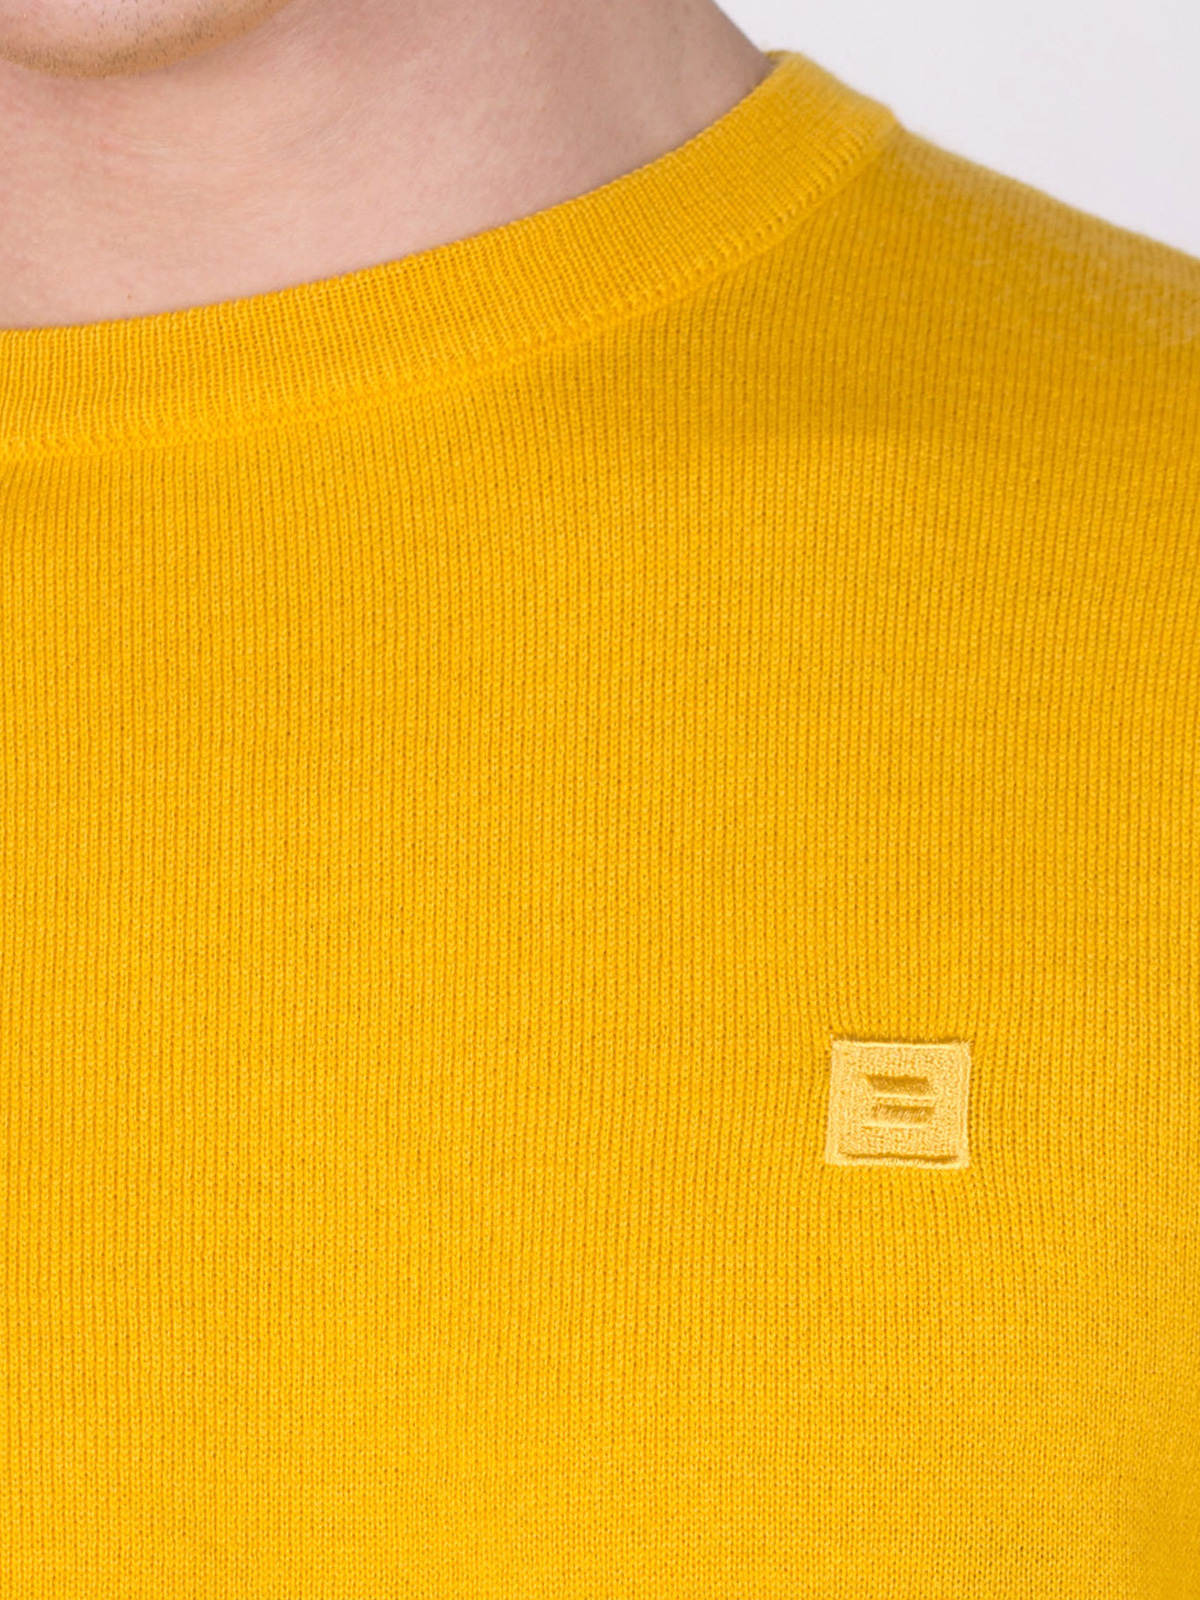 Пуловер с вълна мерино в светло жълто - 33081 39.00 лв img4